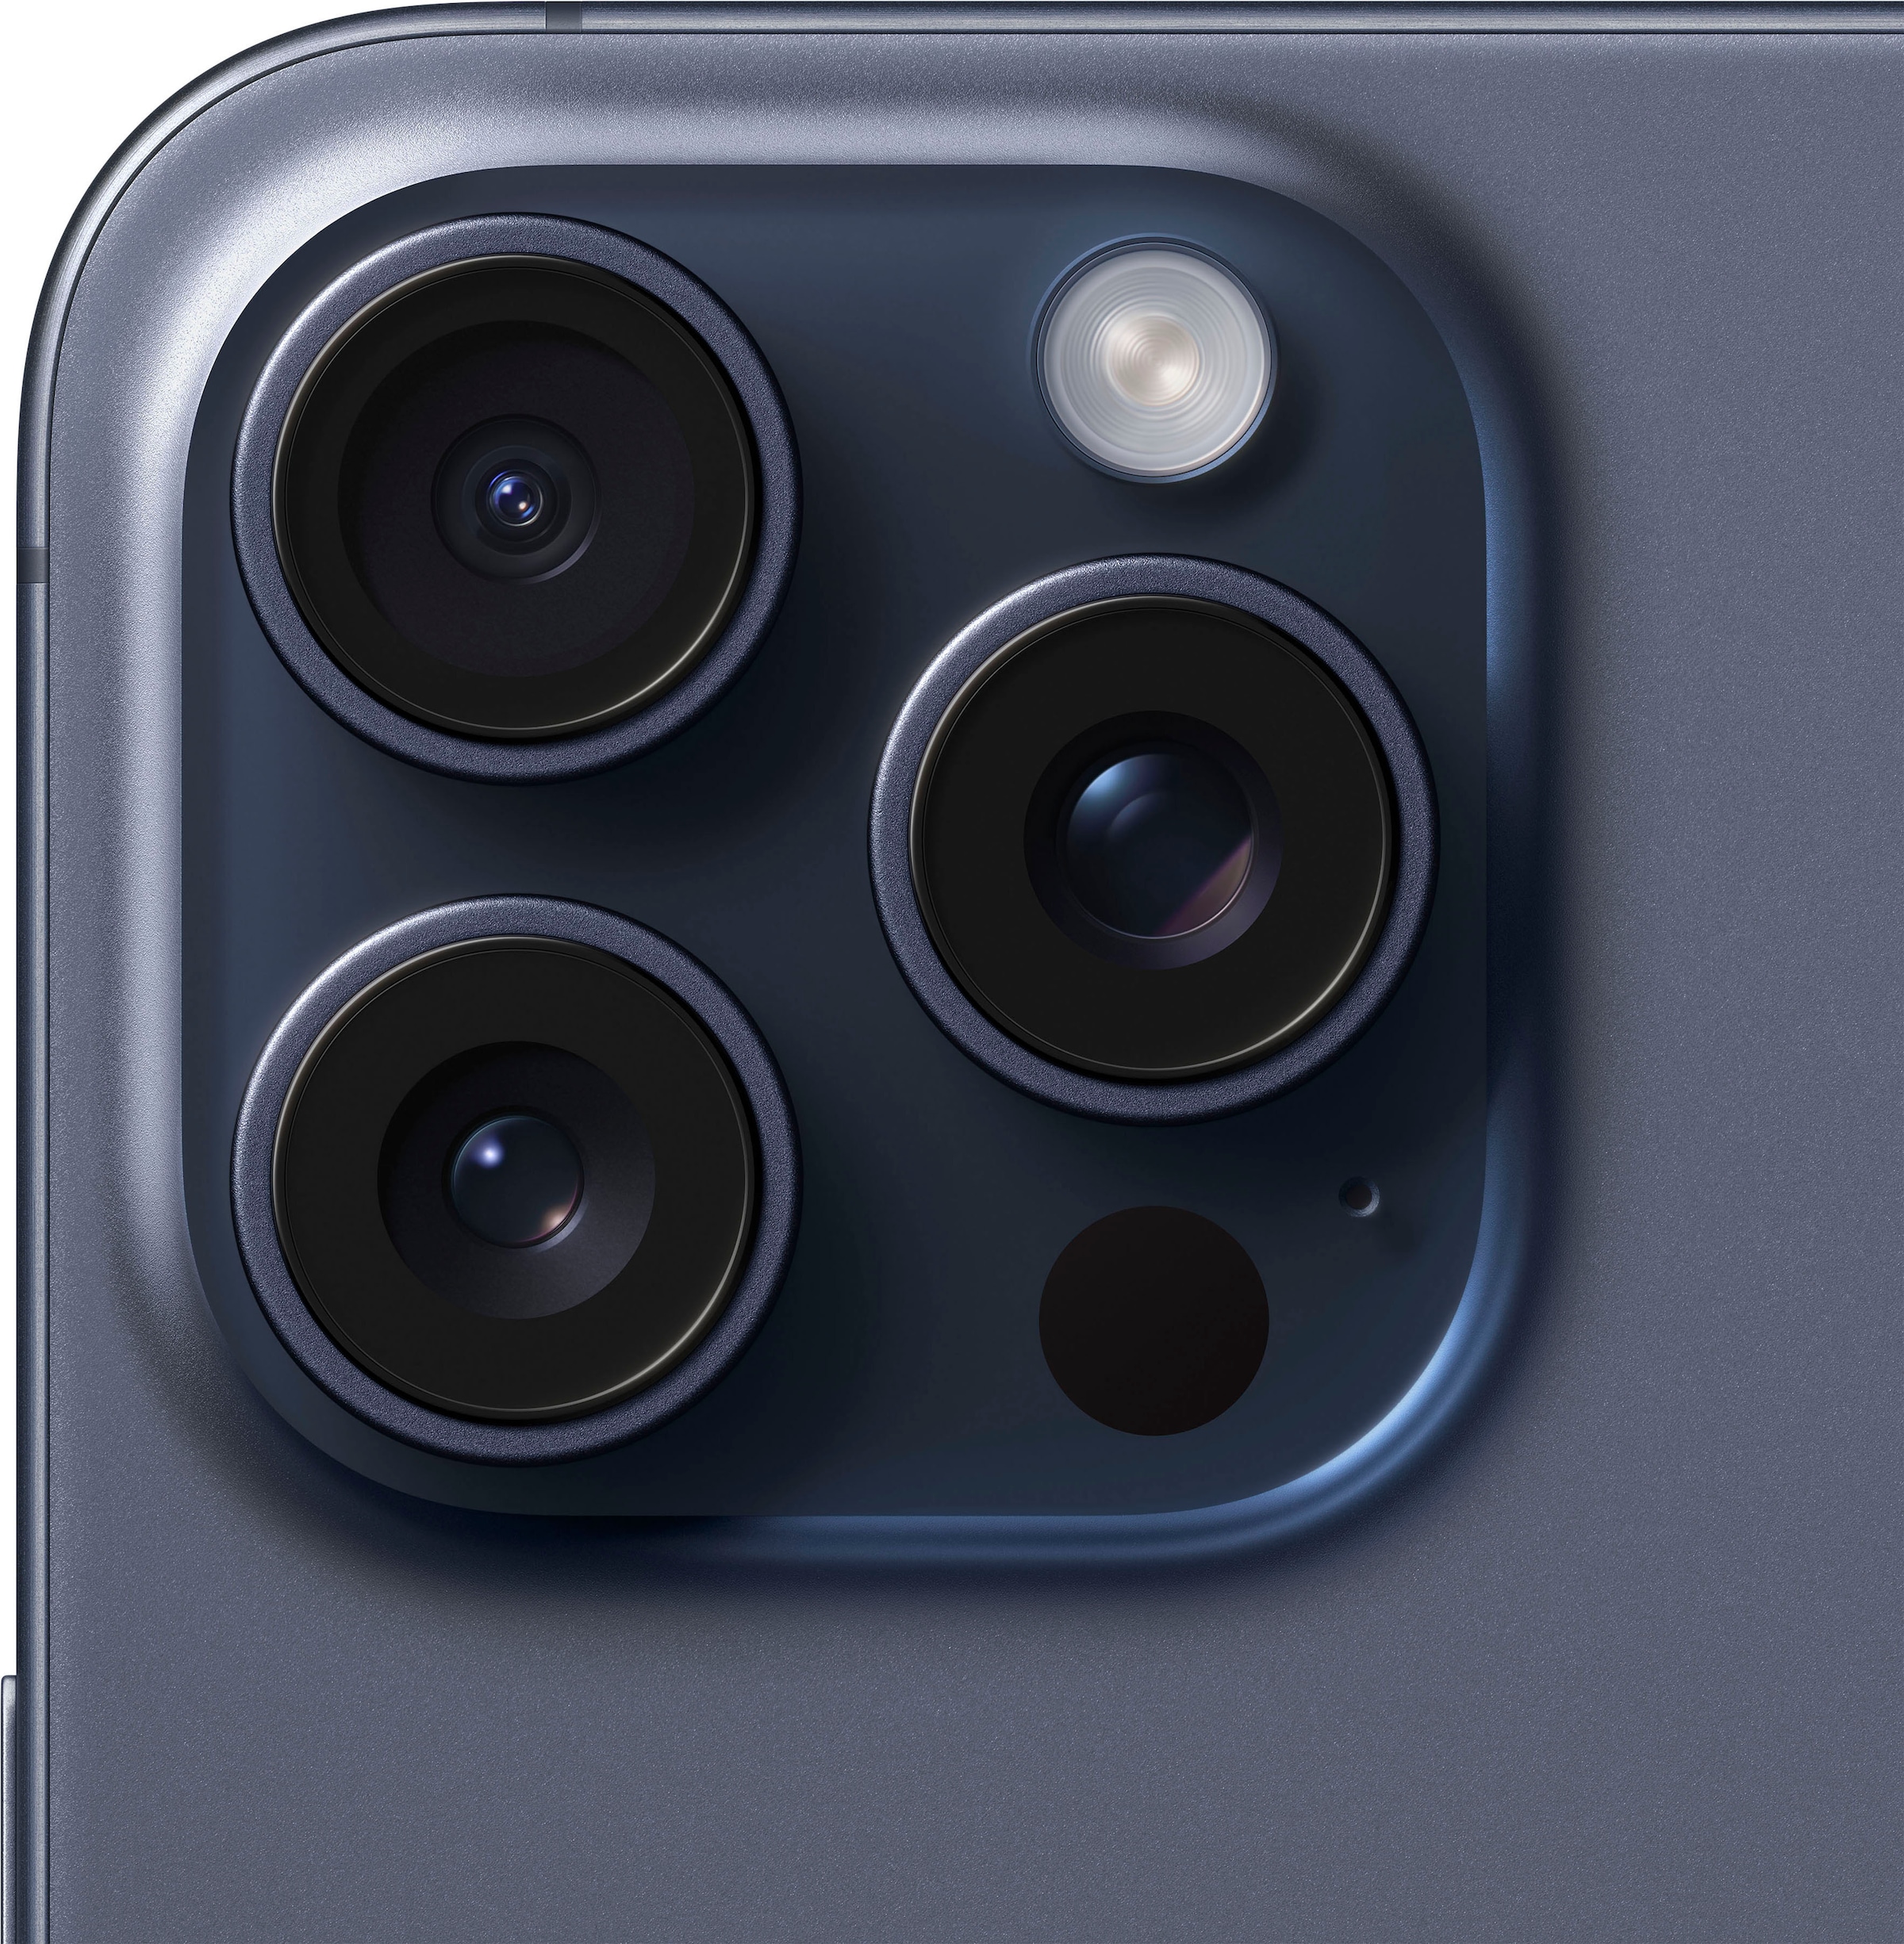 Apple Smartphone »iPhone 15 Pro Max 512GB«, Blue Titanium, 17 cm/6,7 Zoll, 512 GB Speicherplatz, 48 MP Kamera